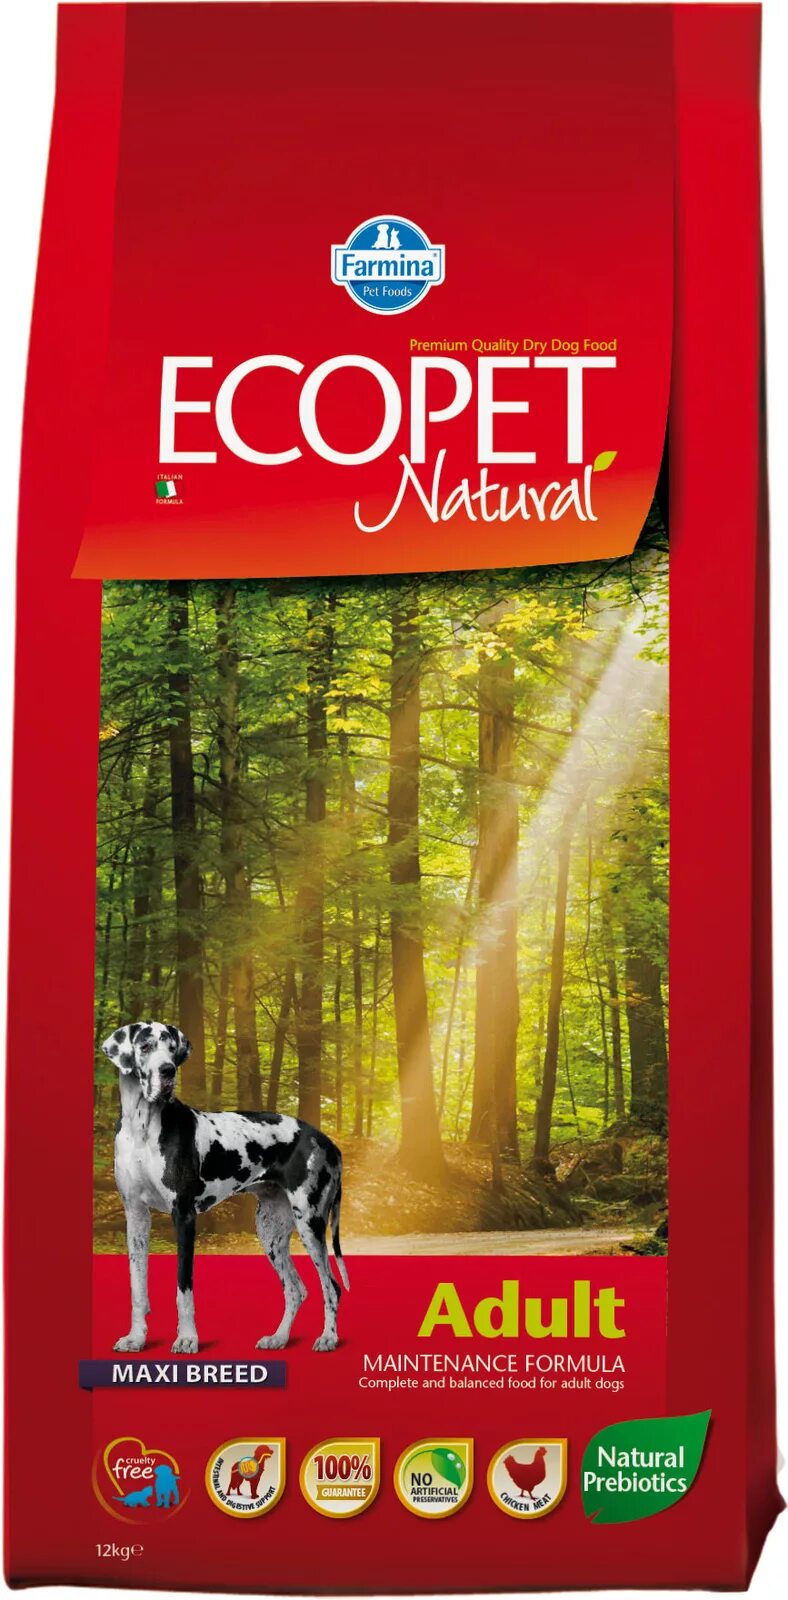 Экопет Фармина корм для собак. Farmina Ecopet natural Puppy. Формига для щенков Ecopet. Farmina Ecopet natural Adult корм д/собак 12кг.